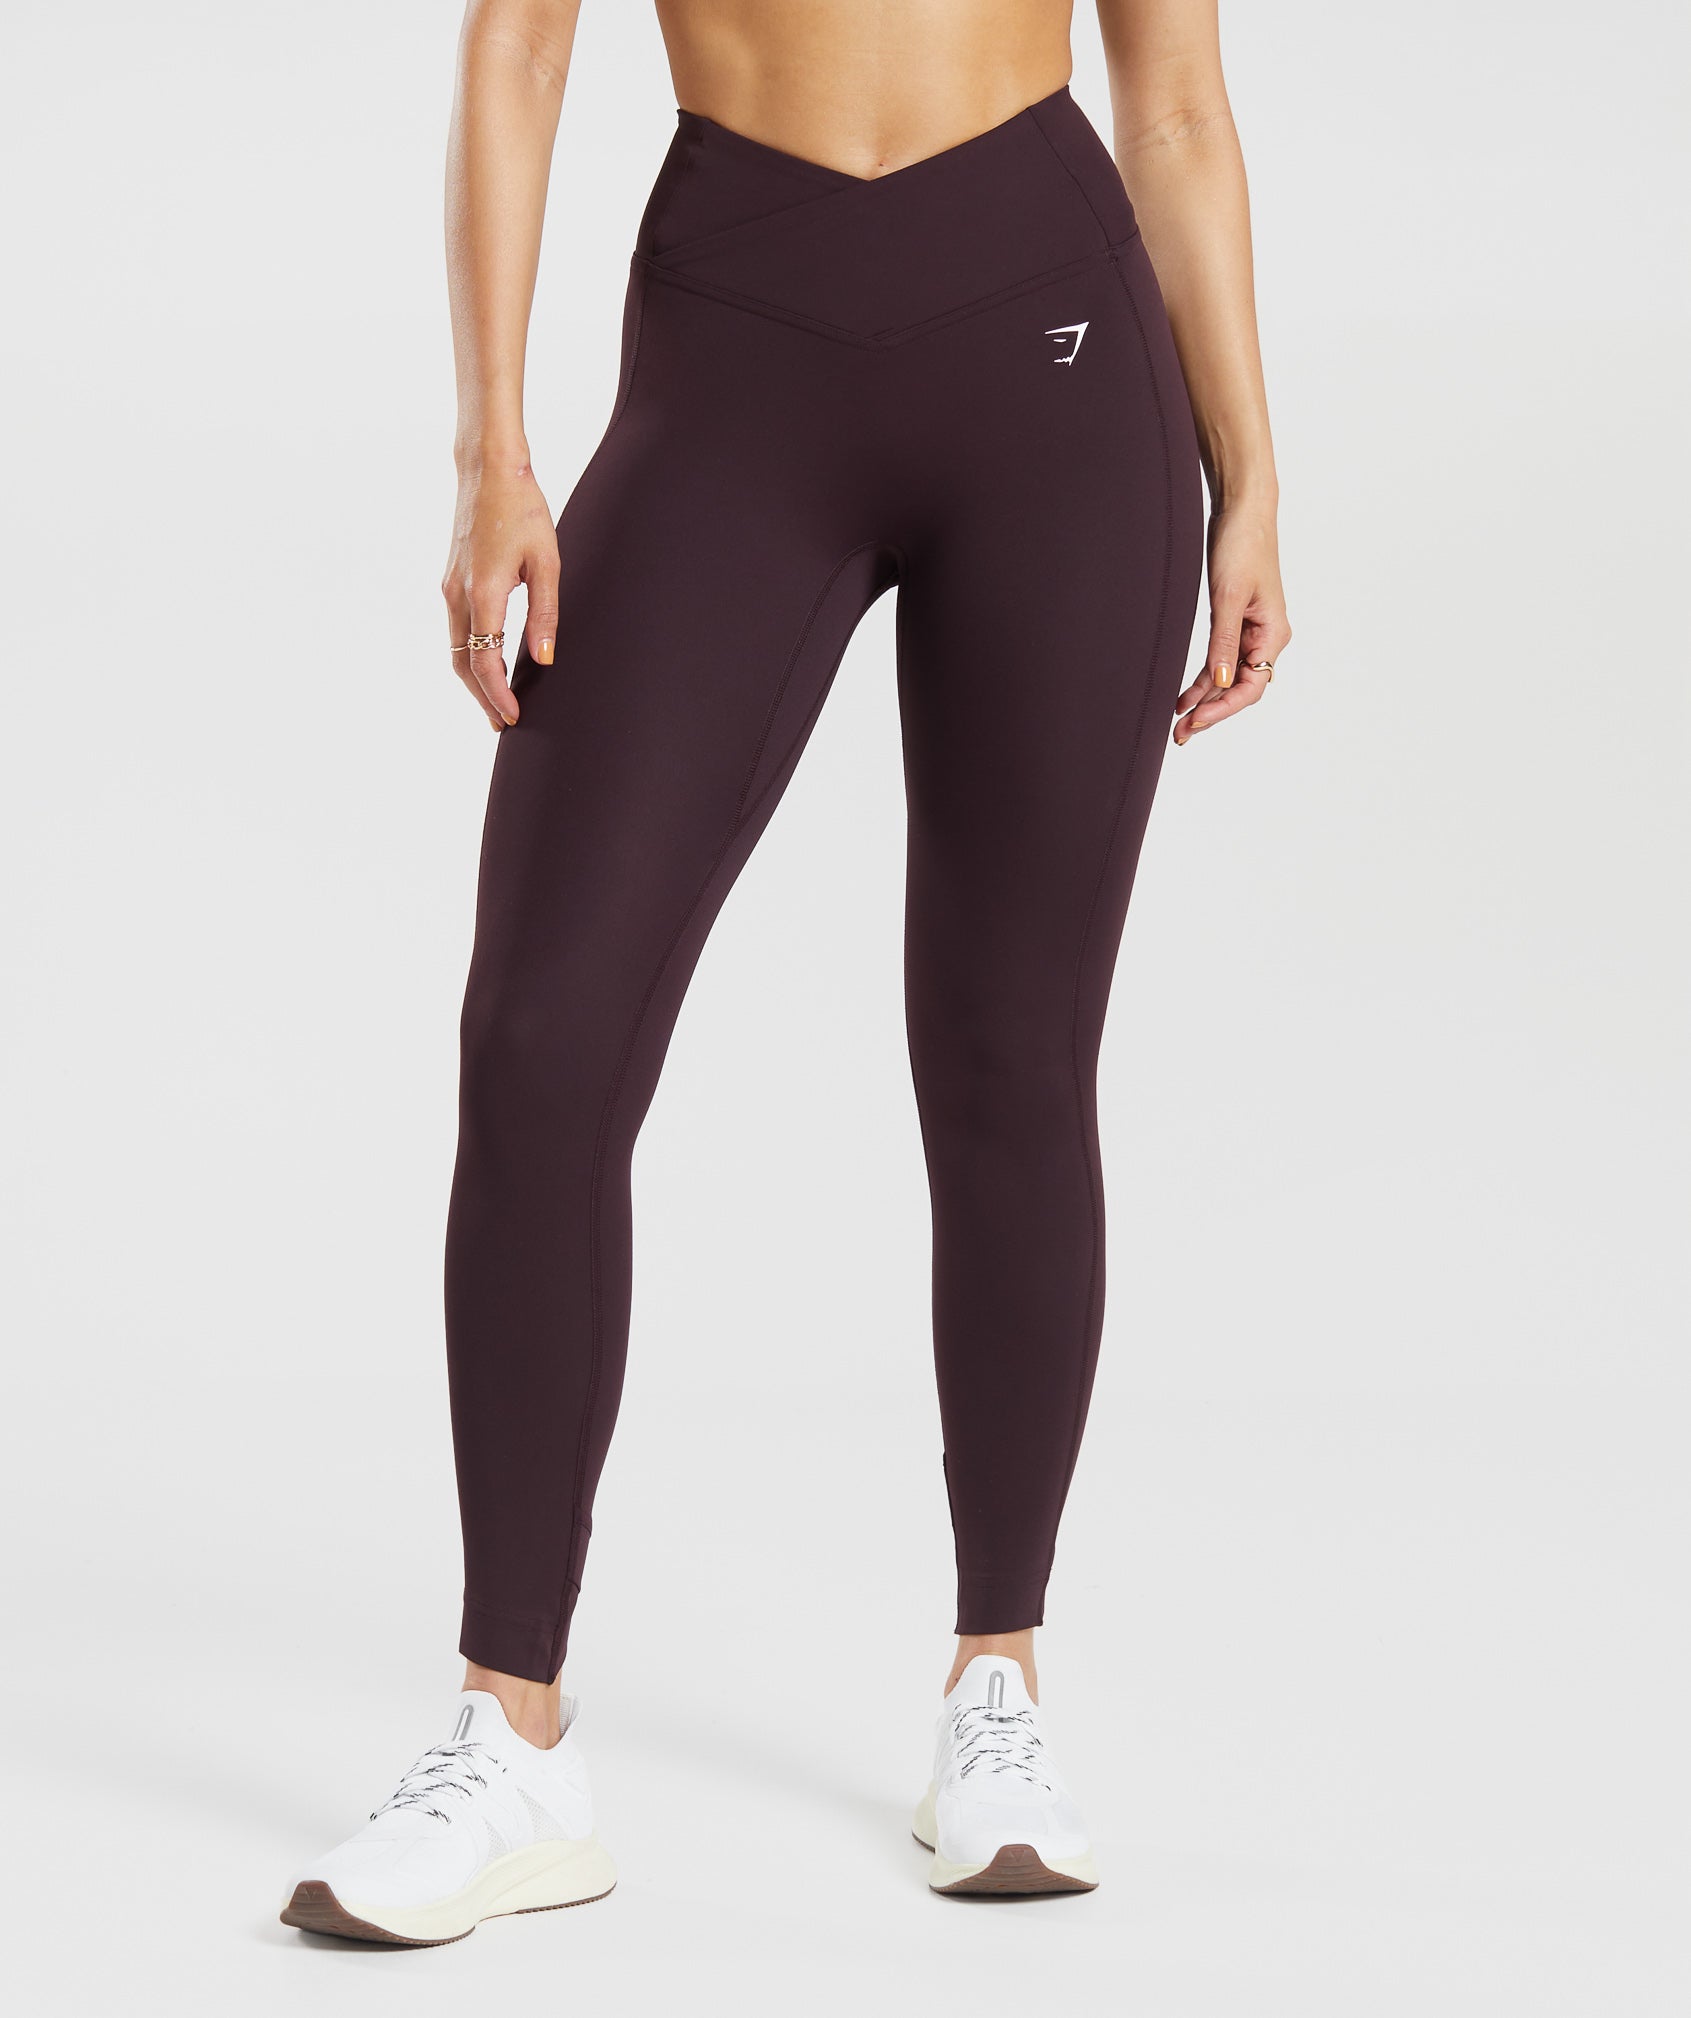 Womens gymshark leggings/ yoga - Gem